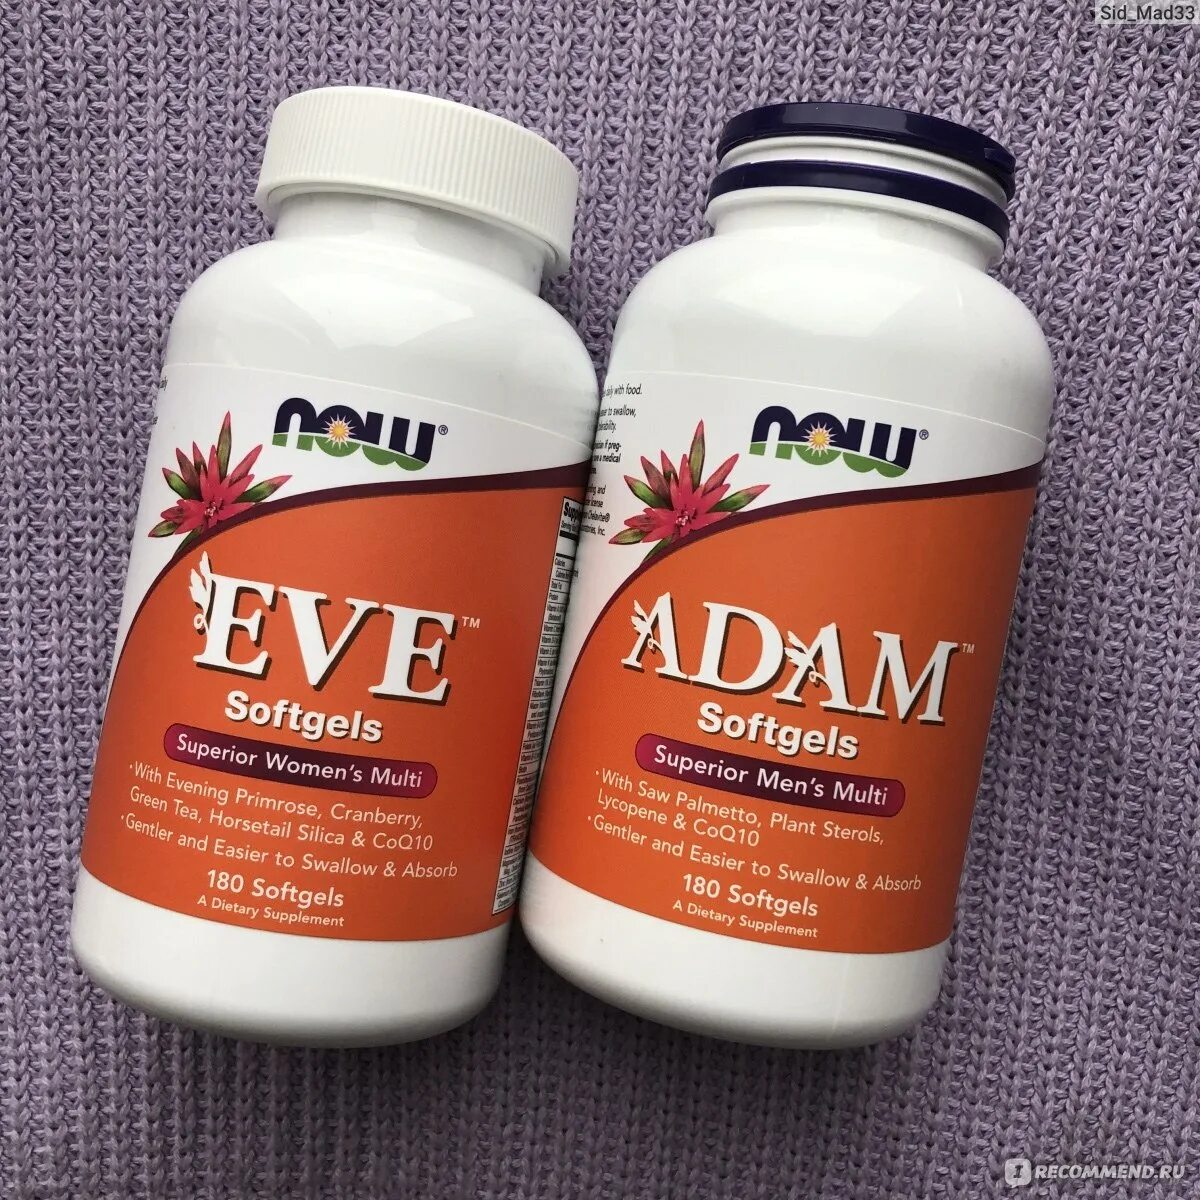 Now витамины для мужчин. Витамины Adam Softgels. Now Eve Superior women's Multi (90 капс.). Eve Softgels витамины для женщин.